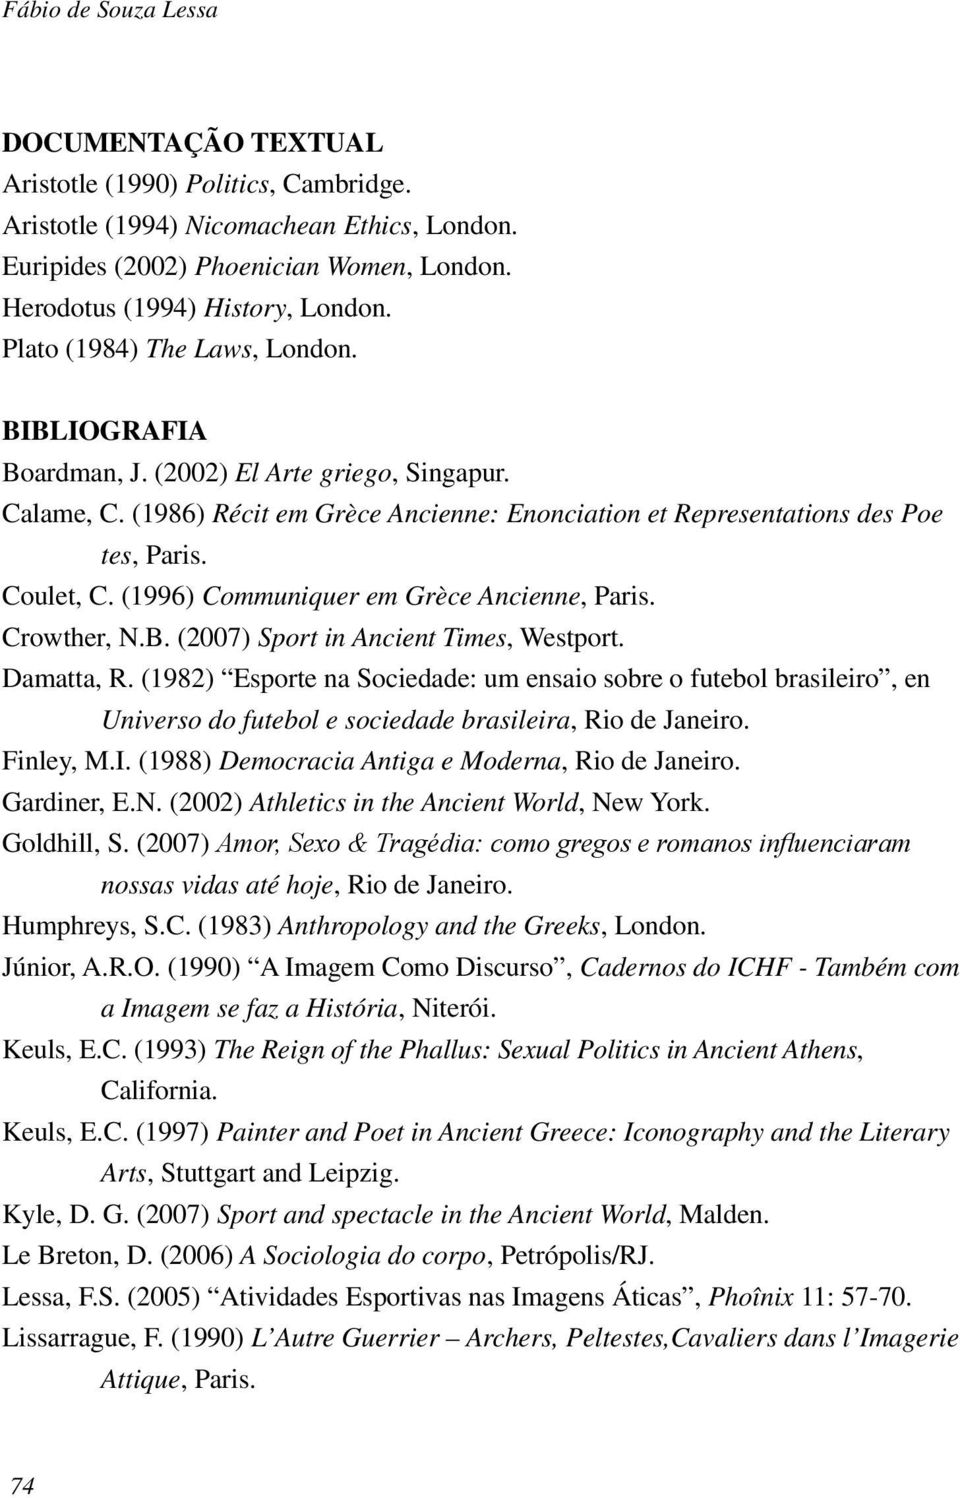 (1986) Récit em Grèce Ancienne: Enonciation et Representations des Poe tes, Paris. Coulet, C. (1996) Communiquer em Grèce Ancienne, Paris. Crowther, N.B. (2007) Sport in Ancient Times, Westport.